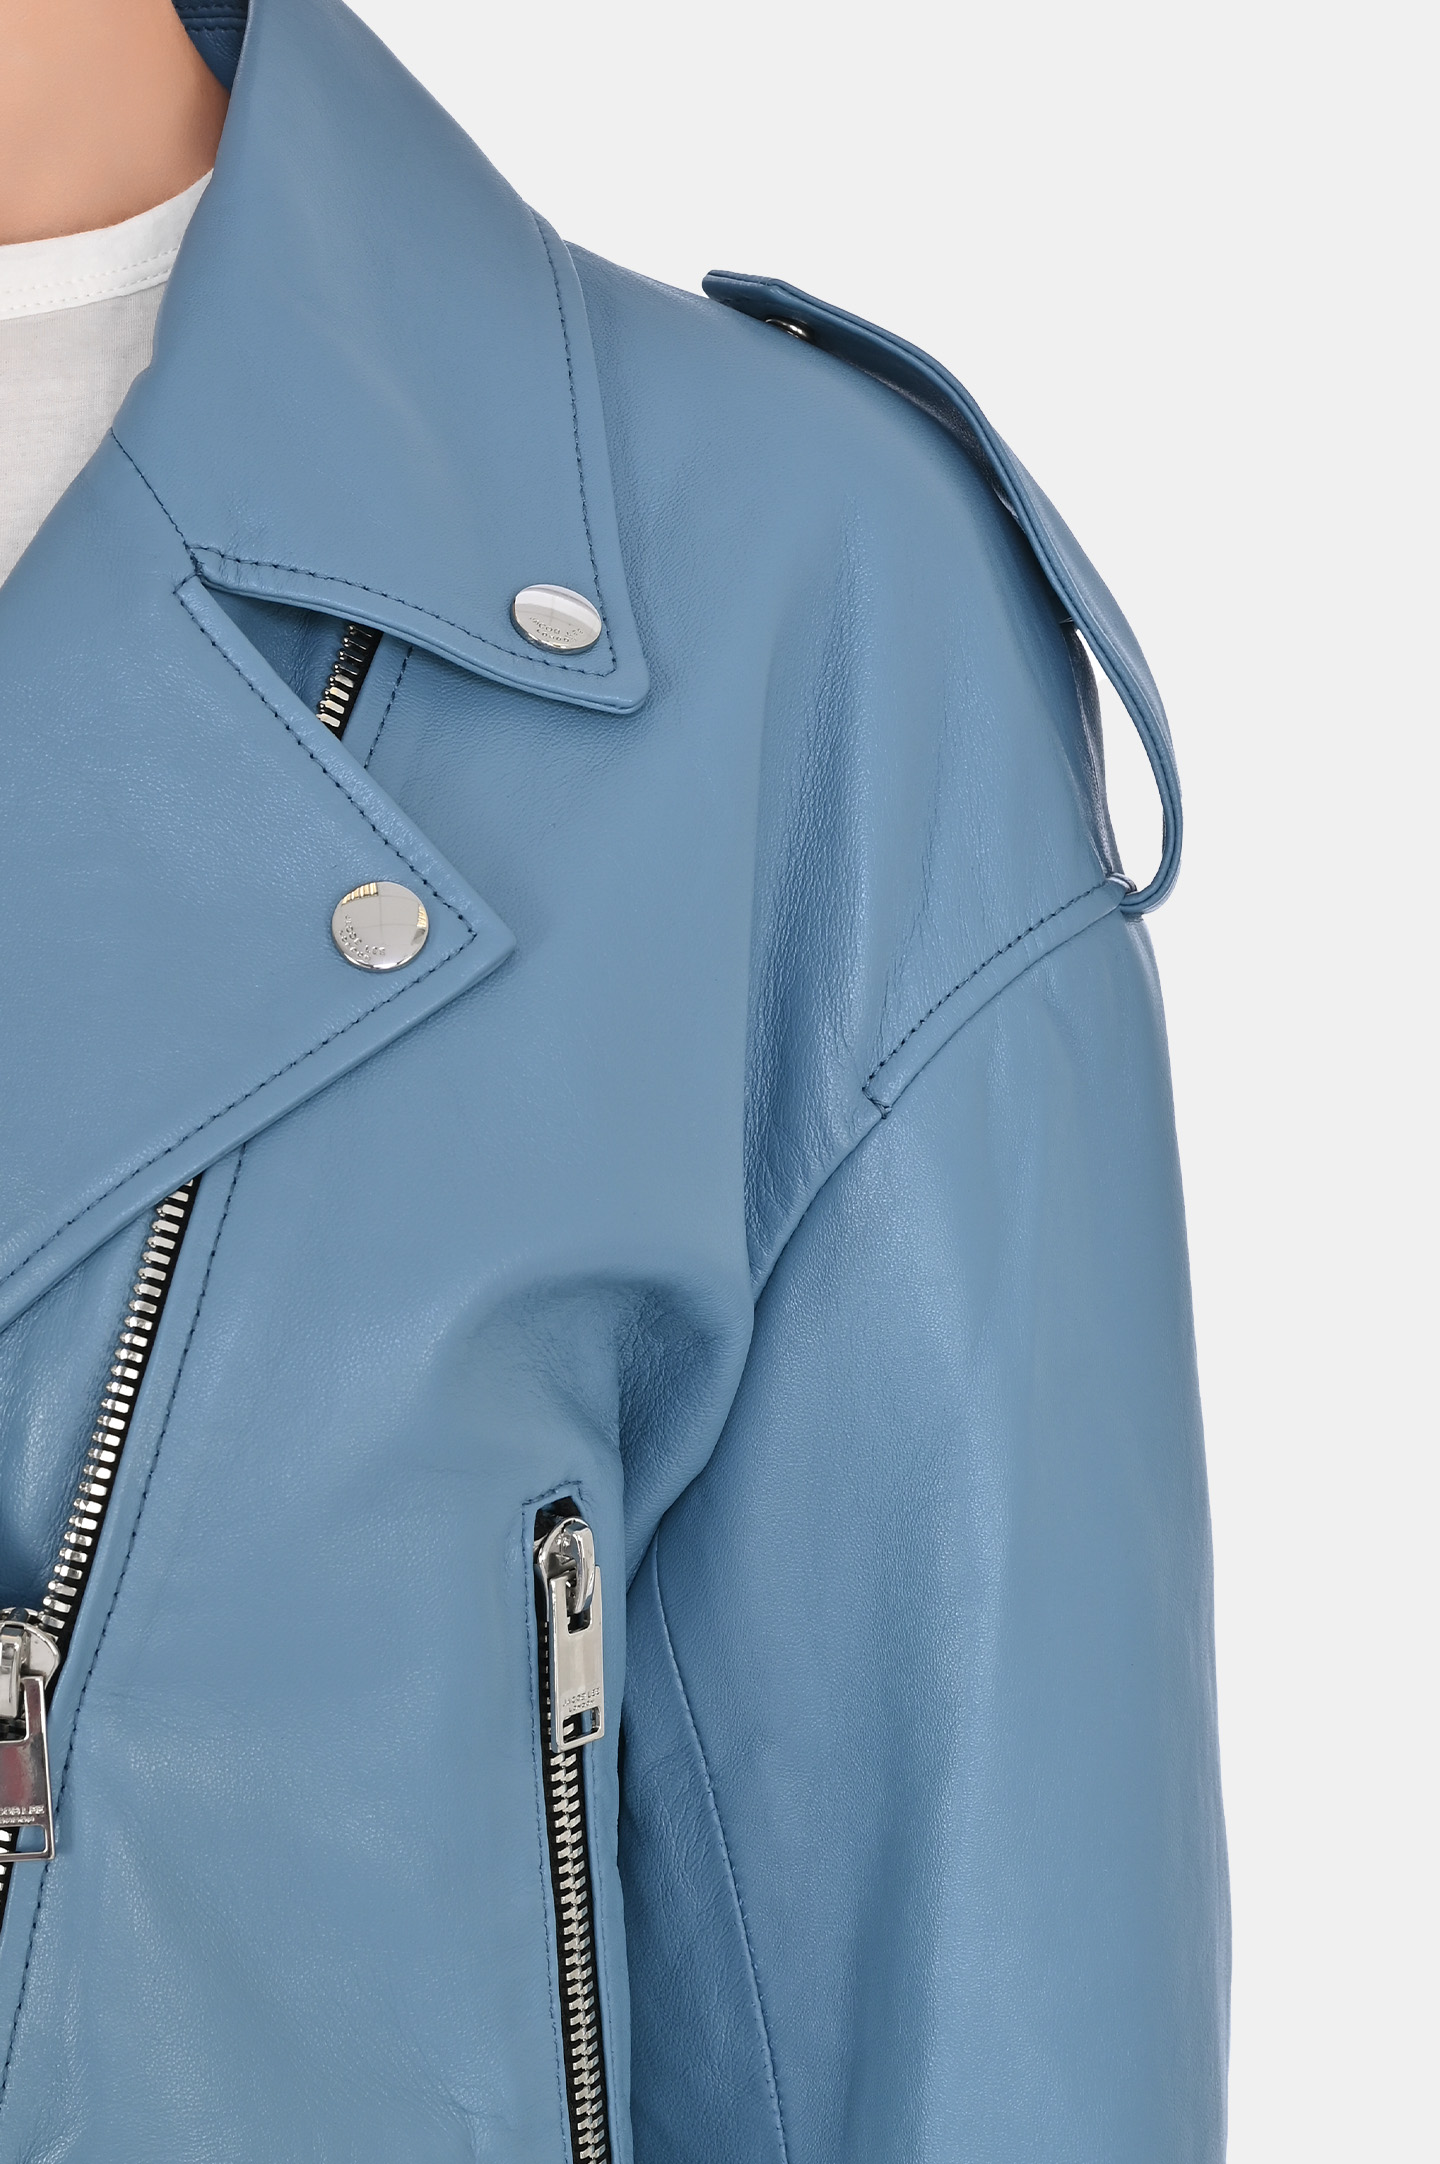 Кожаная куртка-косуха JACOB LEE WLJ16233JB, цвет: Голубой, Женский